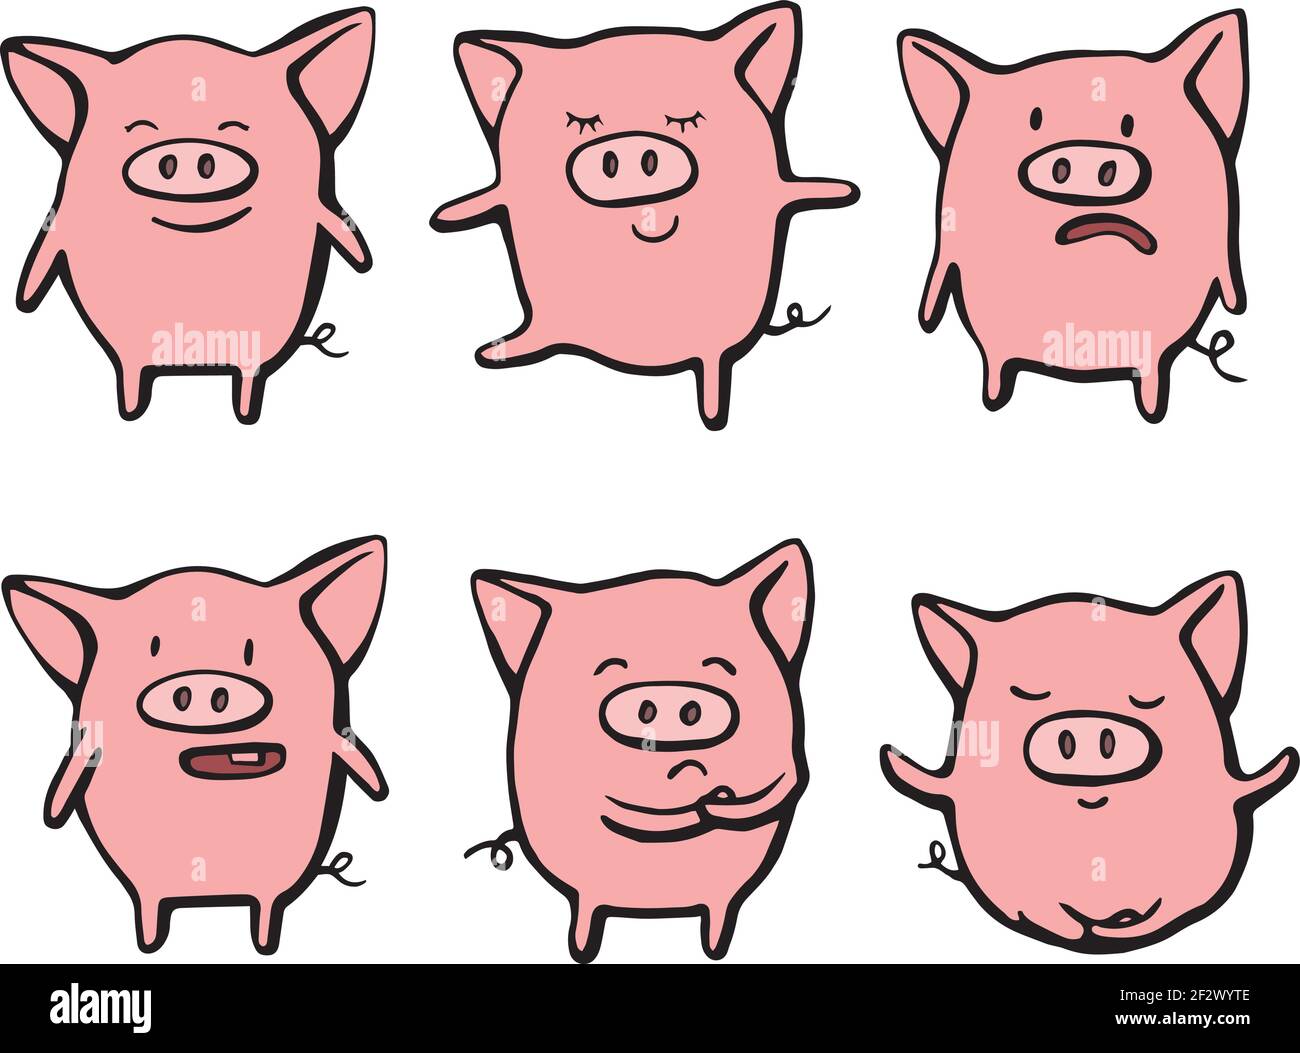 Sammlung von lustigen Schwein emoticon Zeichen in verschiedenen Emotionen. Vektorset handgezeichnete Illustration. Weihnachtskarte, Poster, T-Shirt Komposition Stock Vektor